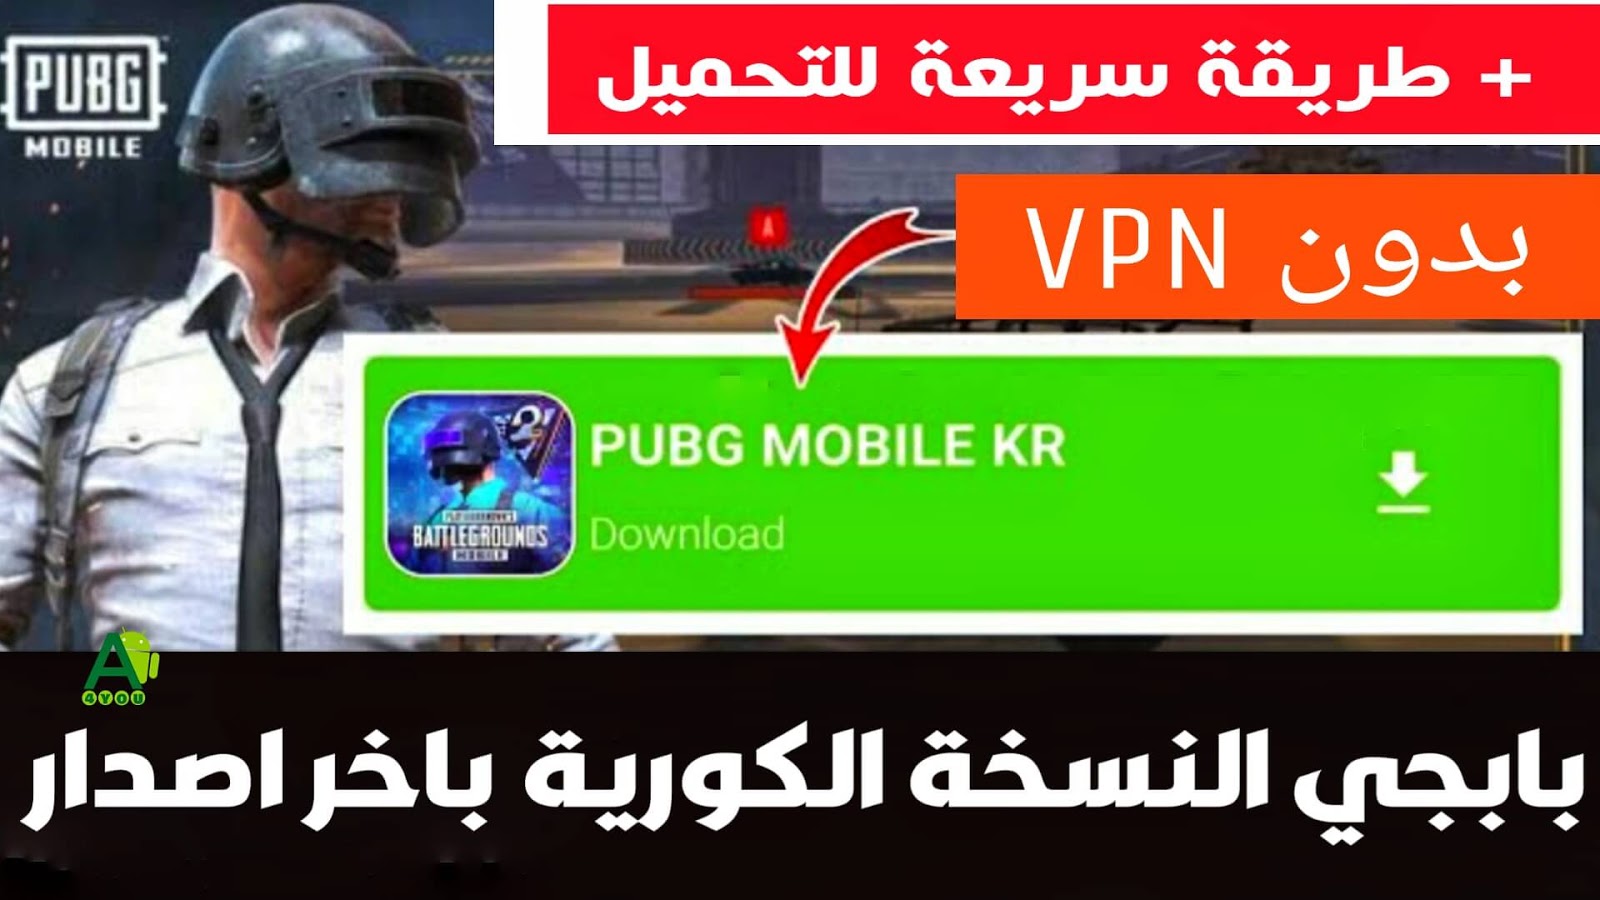 تحميل لعبة ببجي النسخة الكورية بدون Vpn للاندرويد Download Pubg Mobile Kr